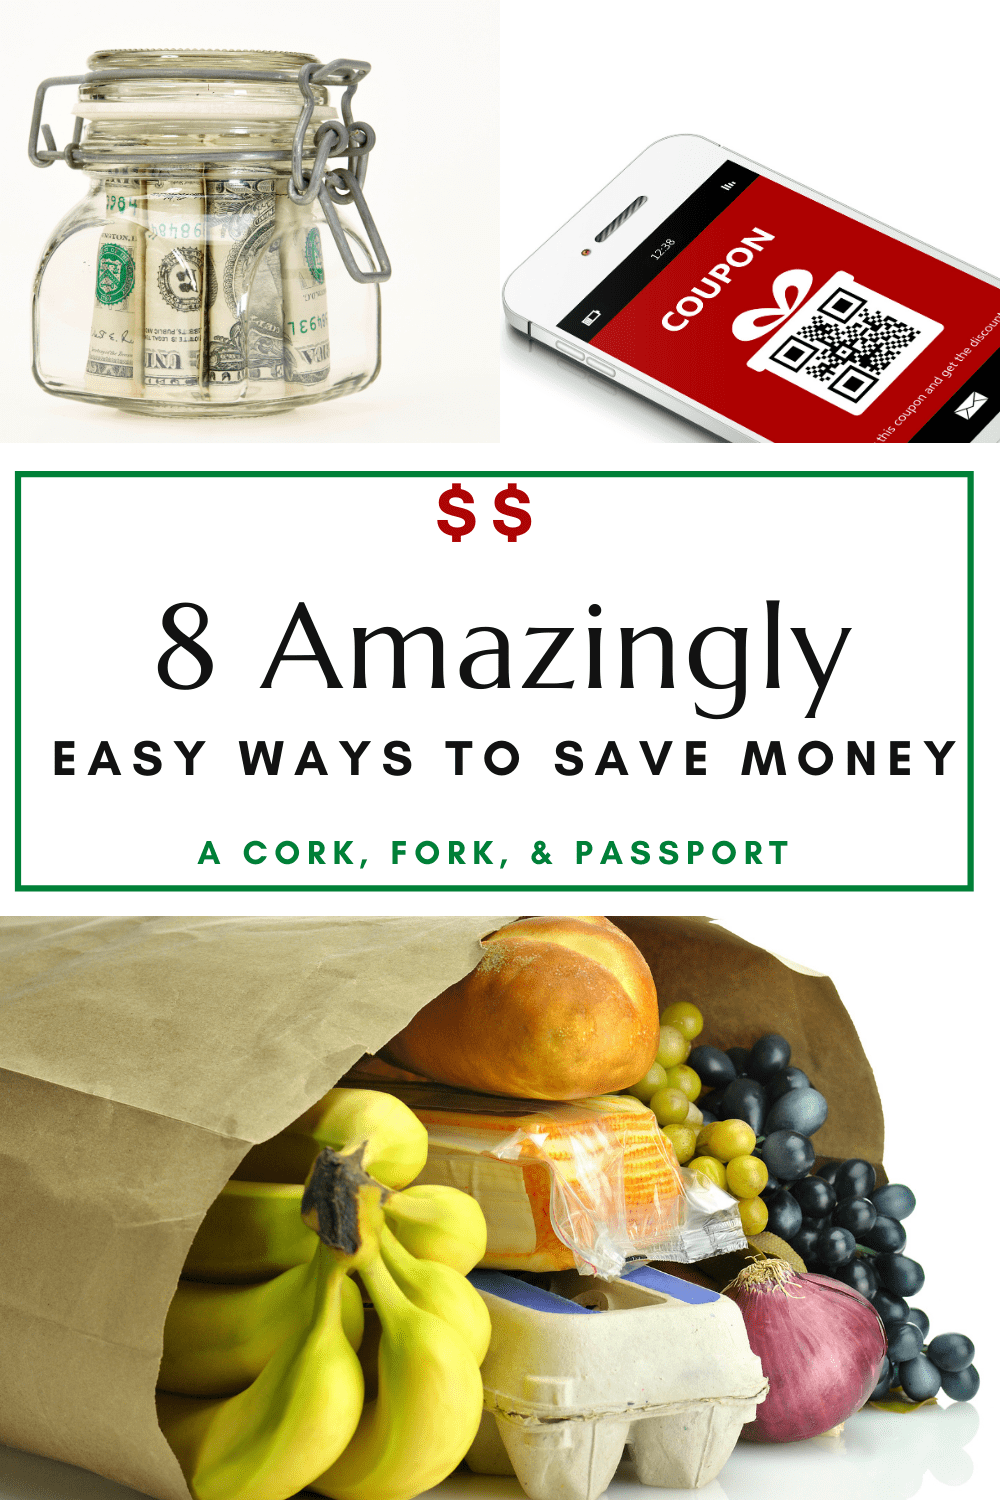 8 Amazingly Easy Ways to Save Money1